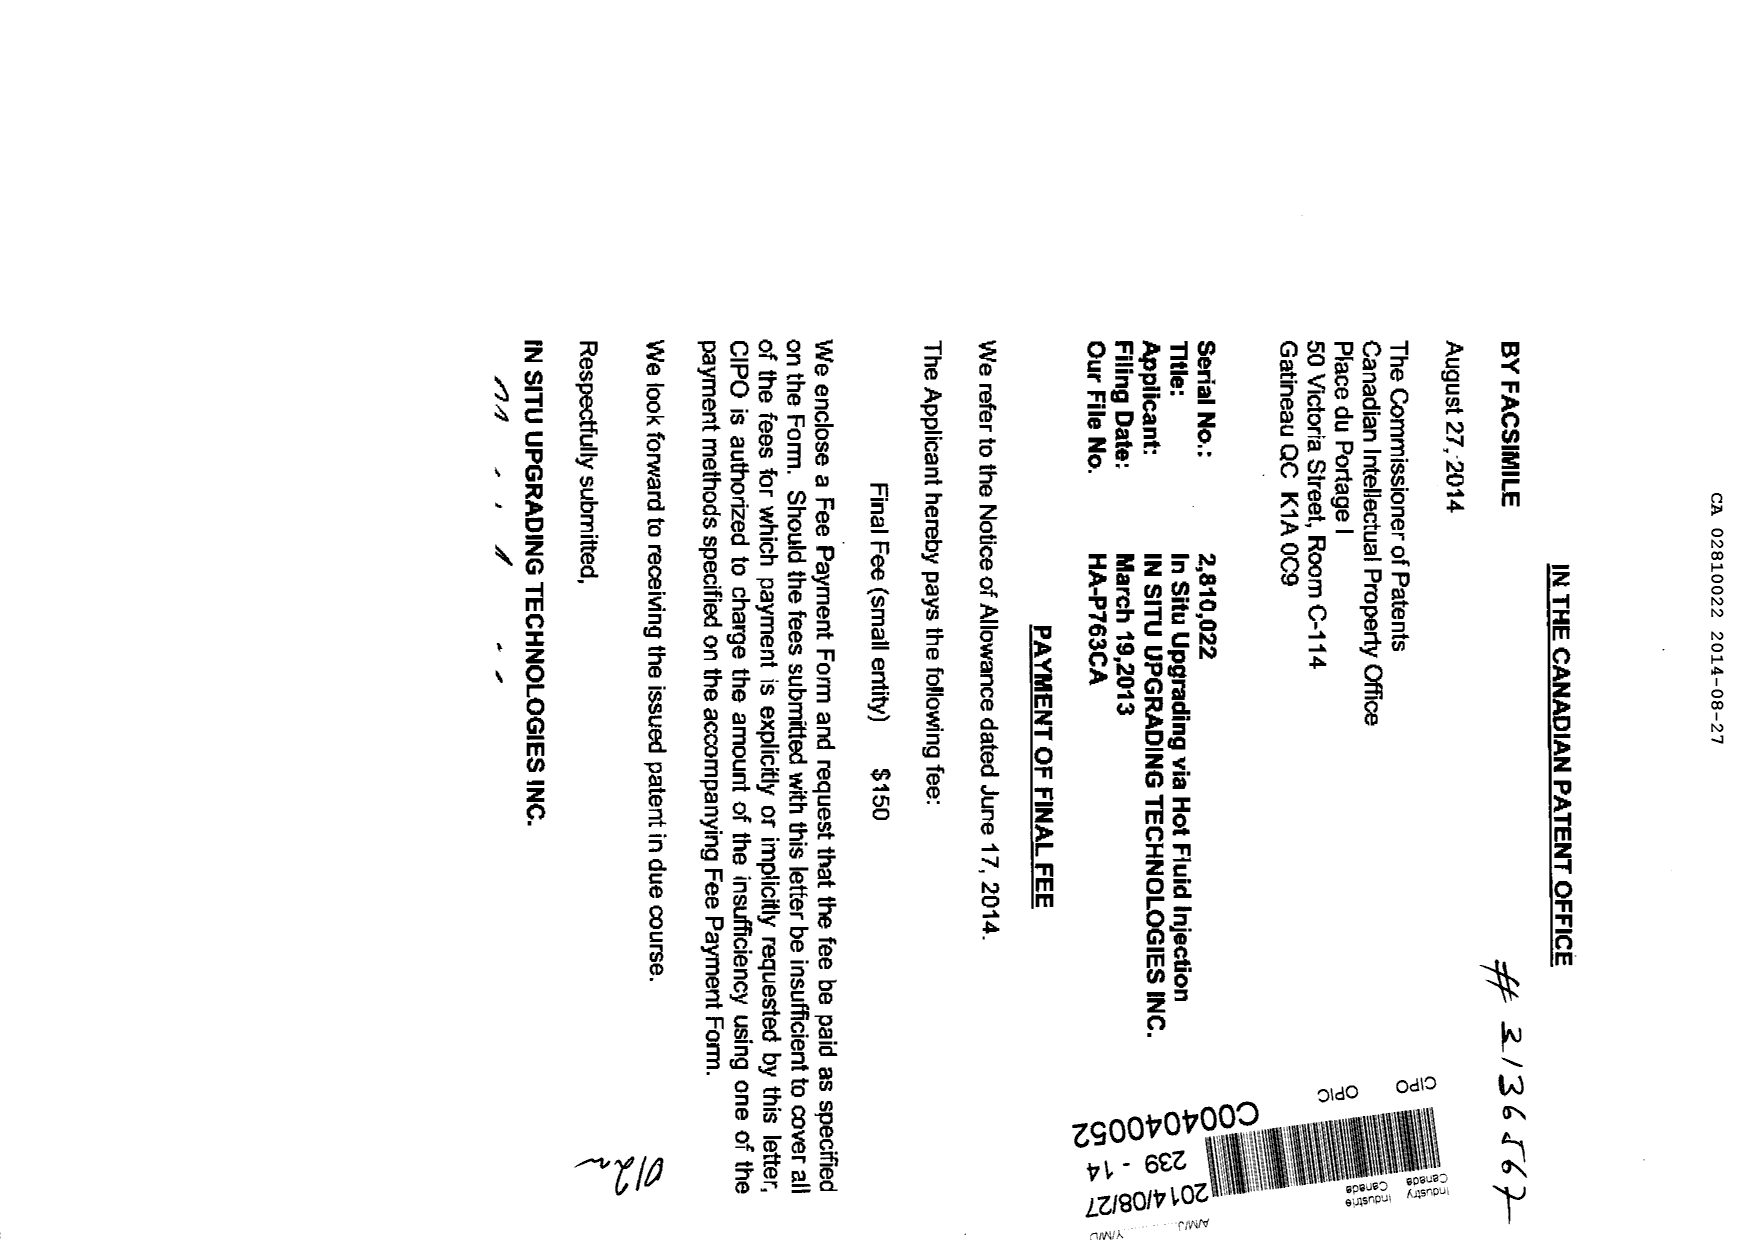 Document de brevet canadien 2810022. Correspondance 20131227. Image 1 de 2